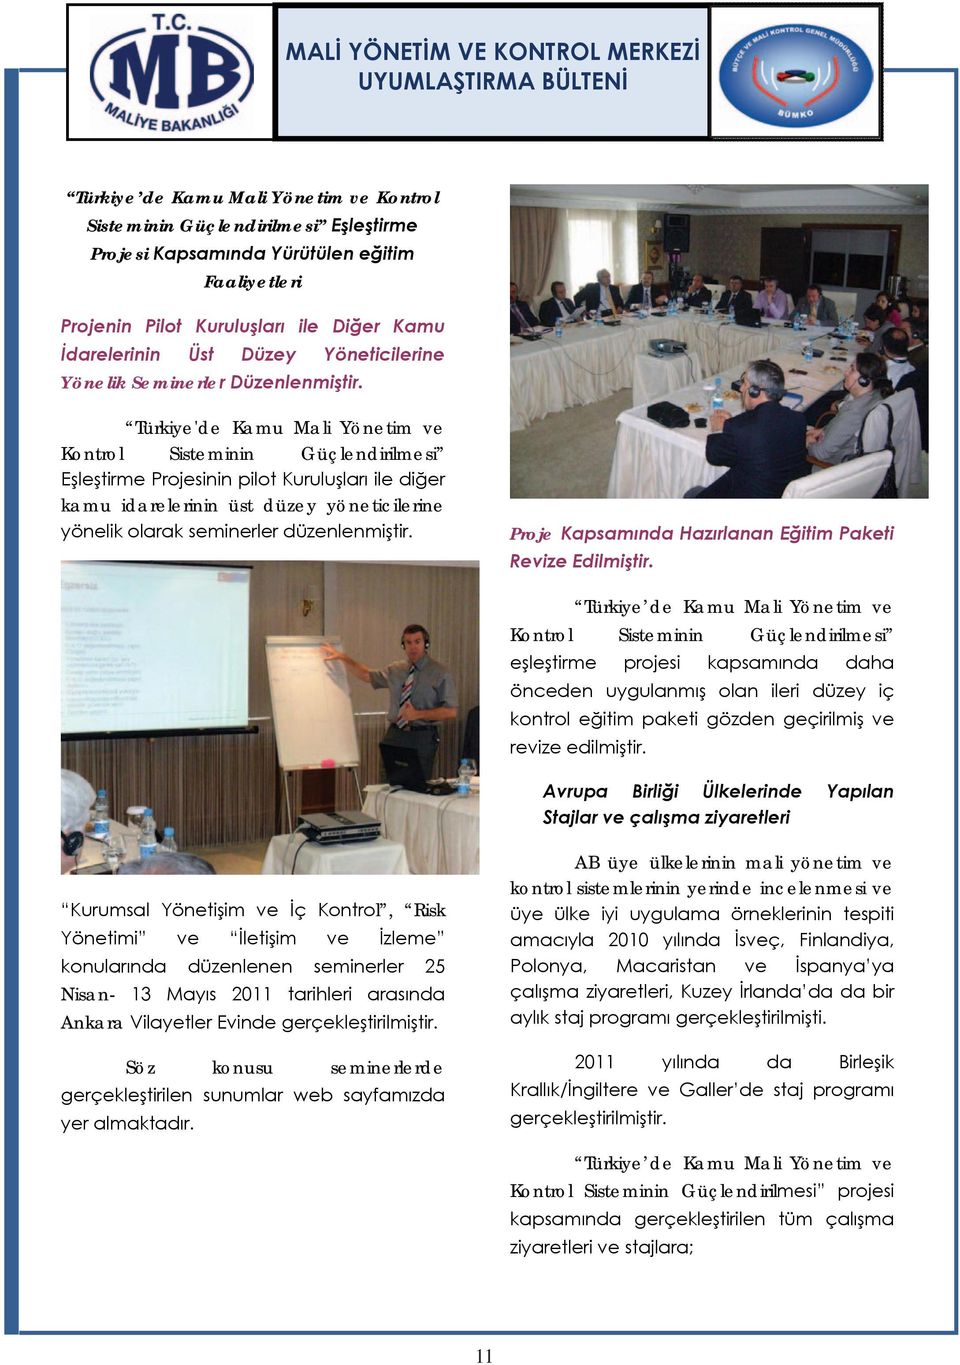 Türkiye'de Kamu Mali Yönetim ve Kontrol Sisteminin Güçlendirilmesi Eşleştirme Projesinin pilot Kuruluşları ile diğer kamu idarelerinin üst düzey yöneticilerine yönelik olarak seminerler